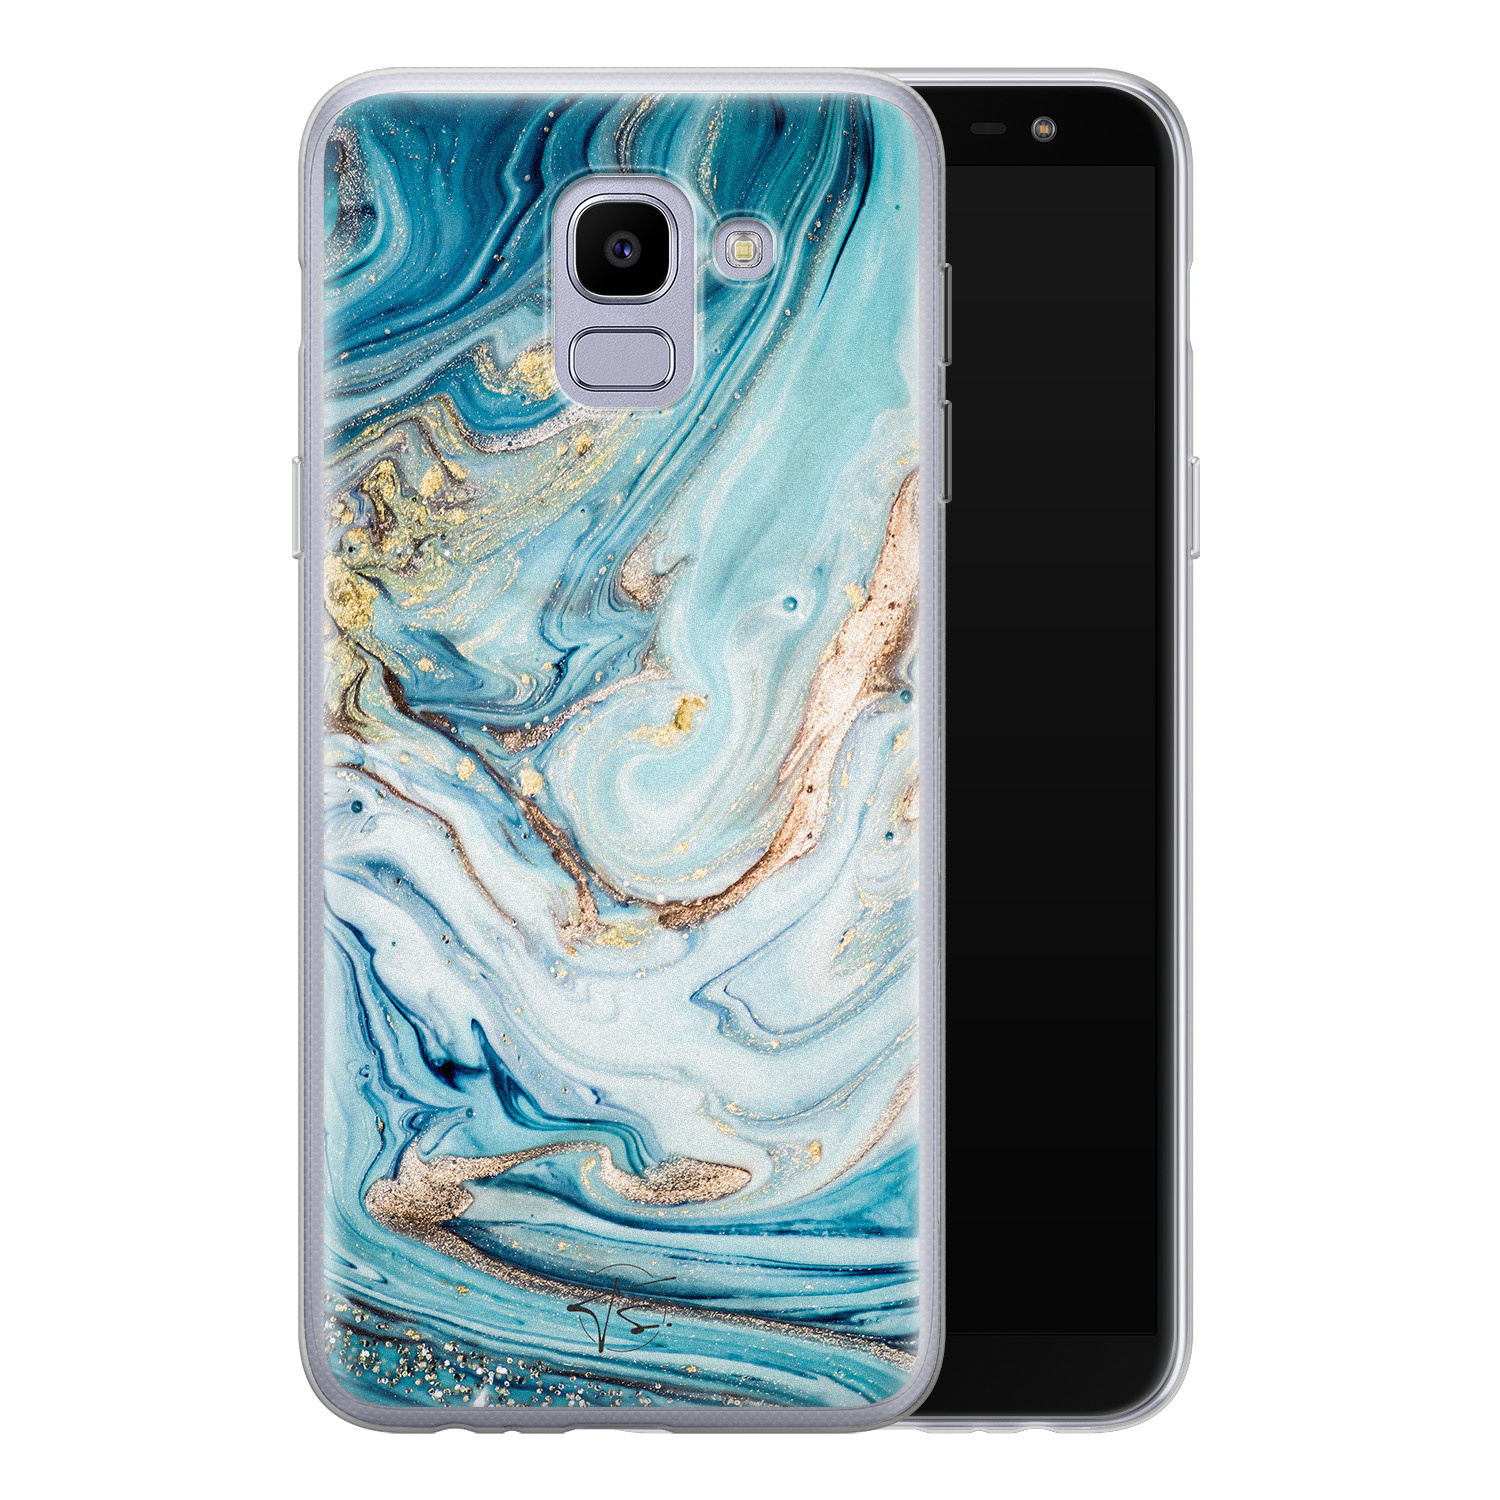 Telefoonhoesje Store Samsung Galaxy J6 2018 siliconen hoesje - Marmer blauw goud